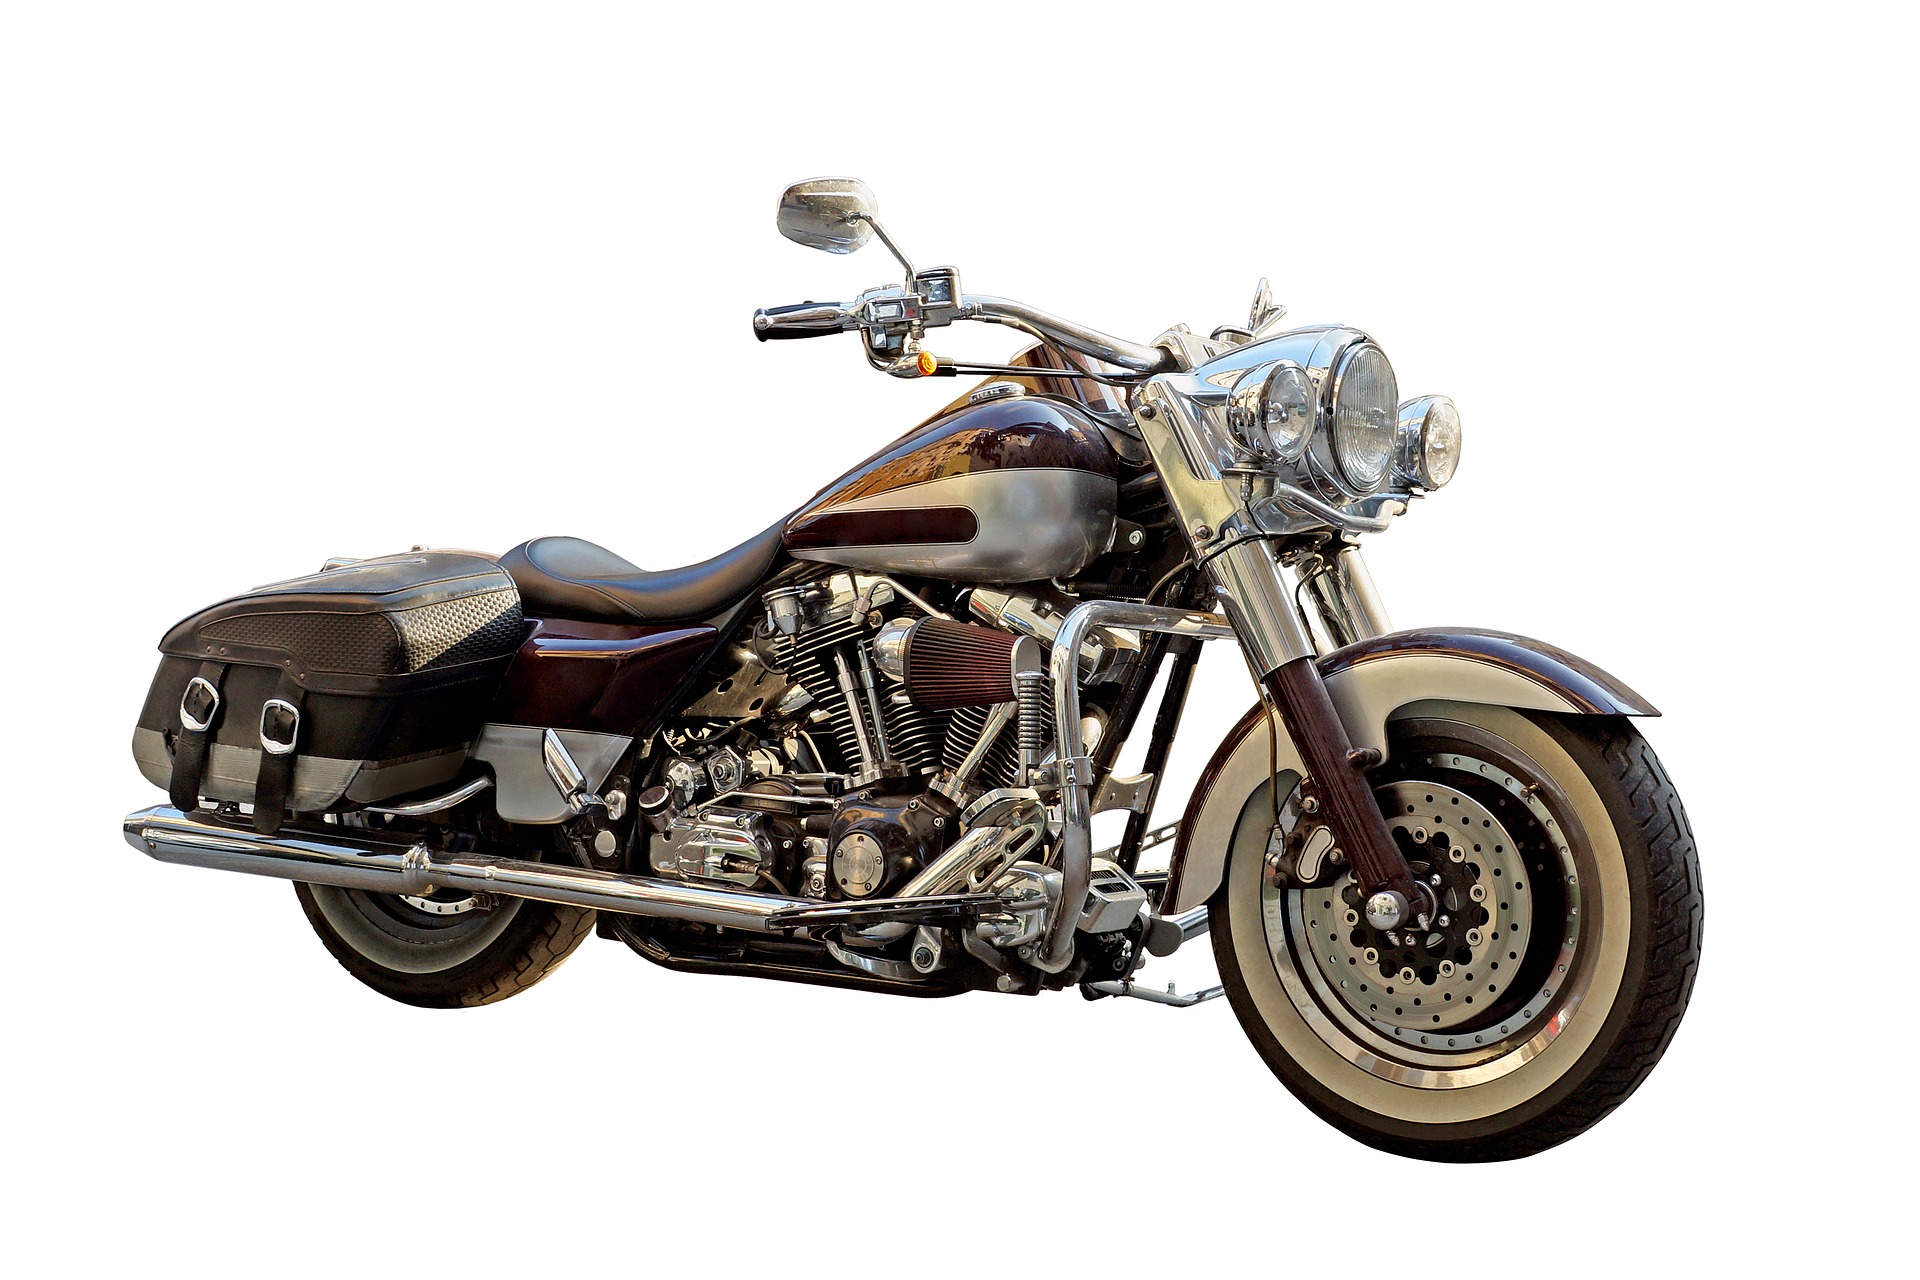 Motocicleta. Tomada de 6188410 en Pixabay